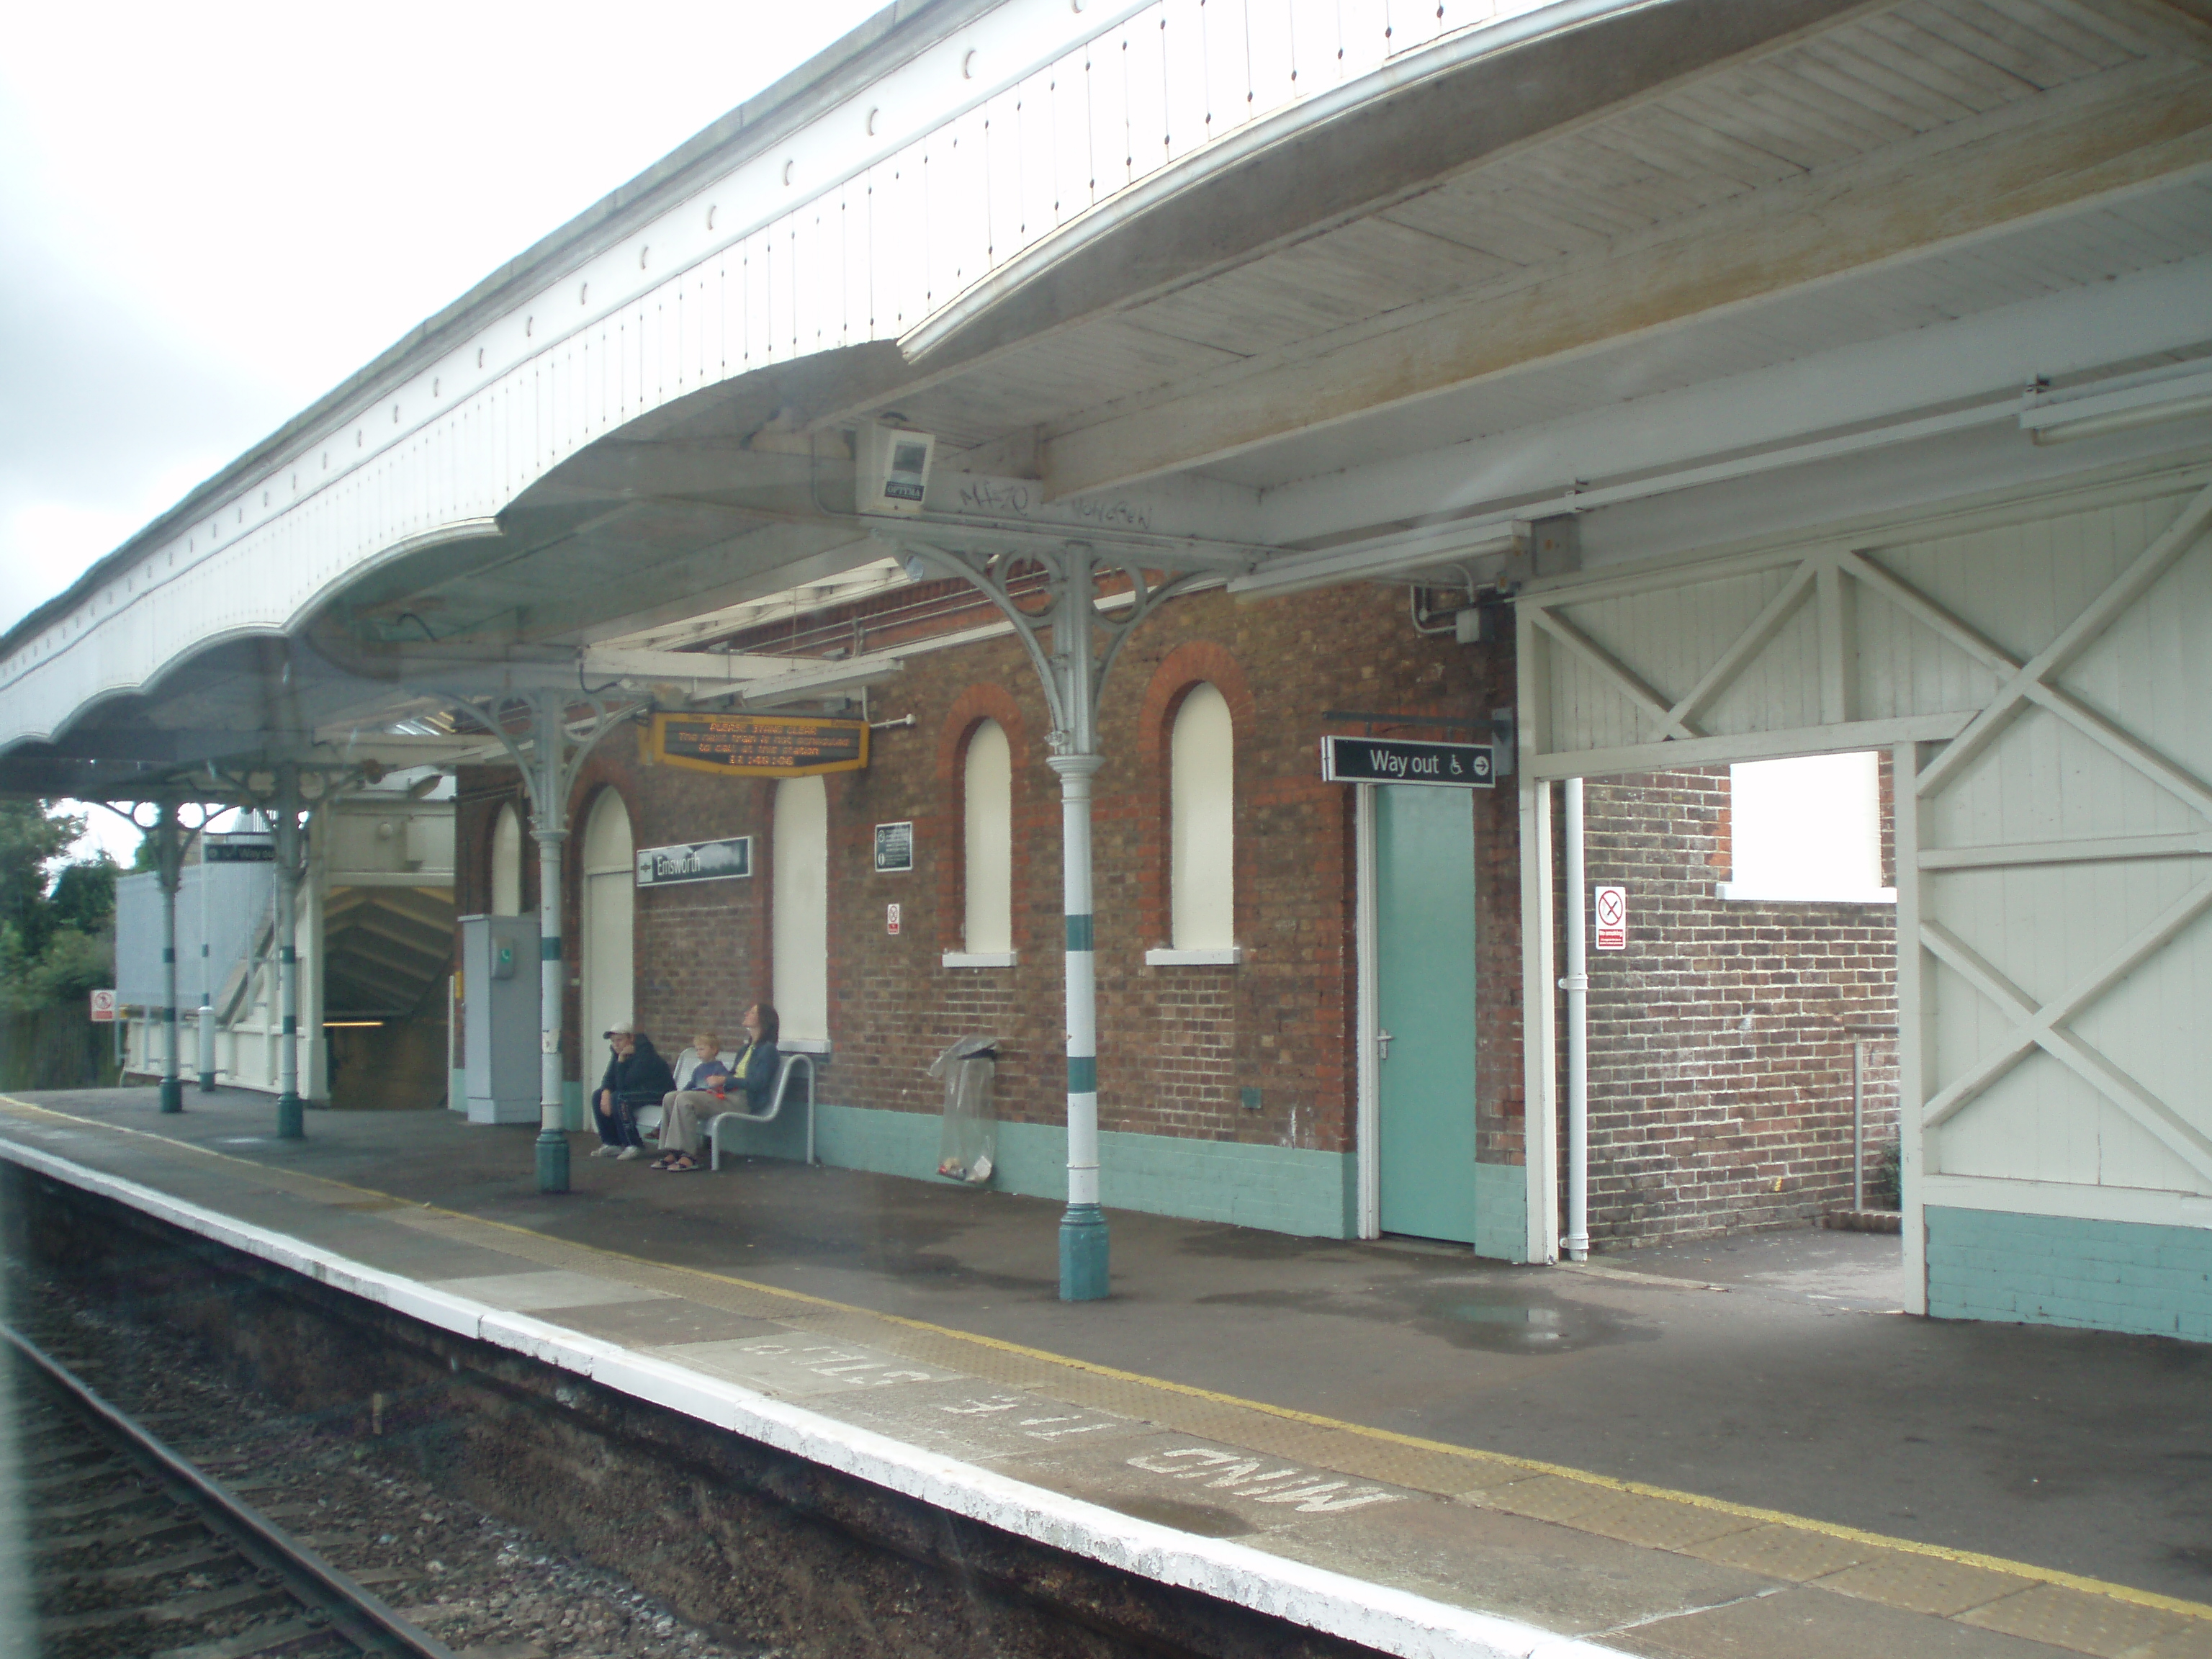 Emsworth railway station